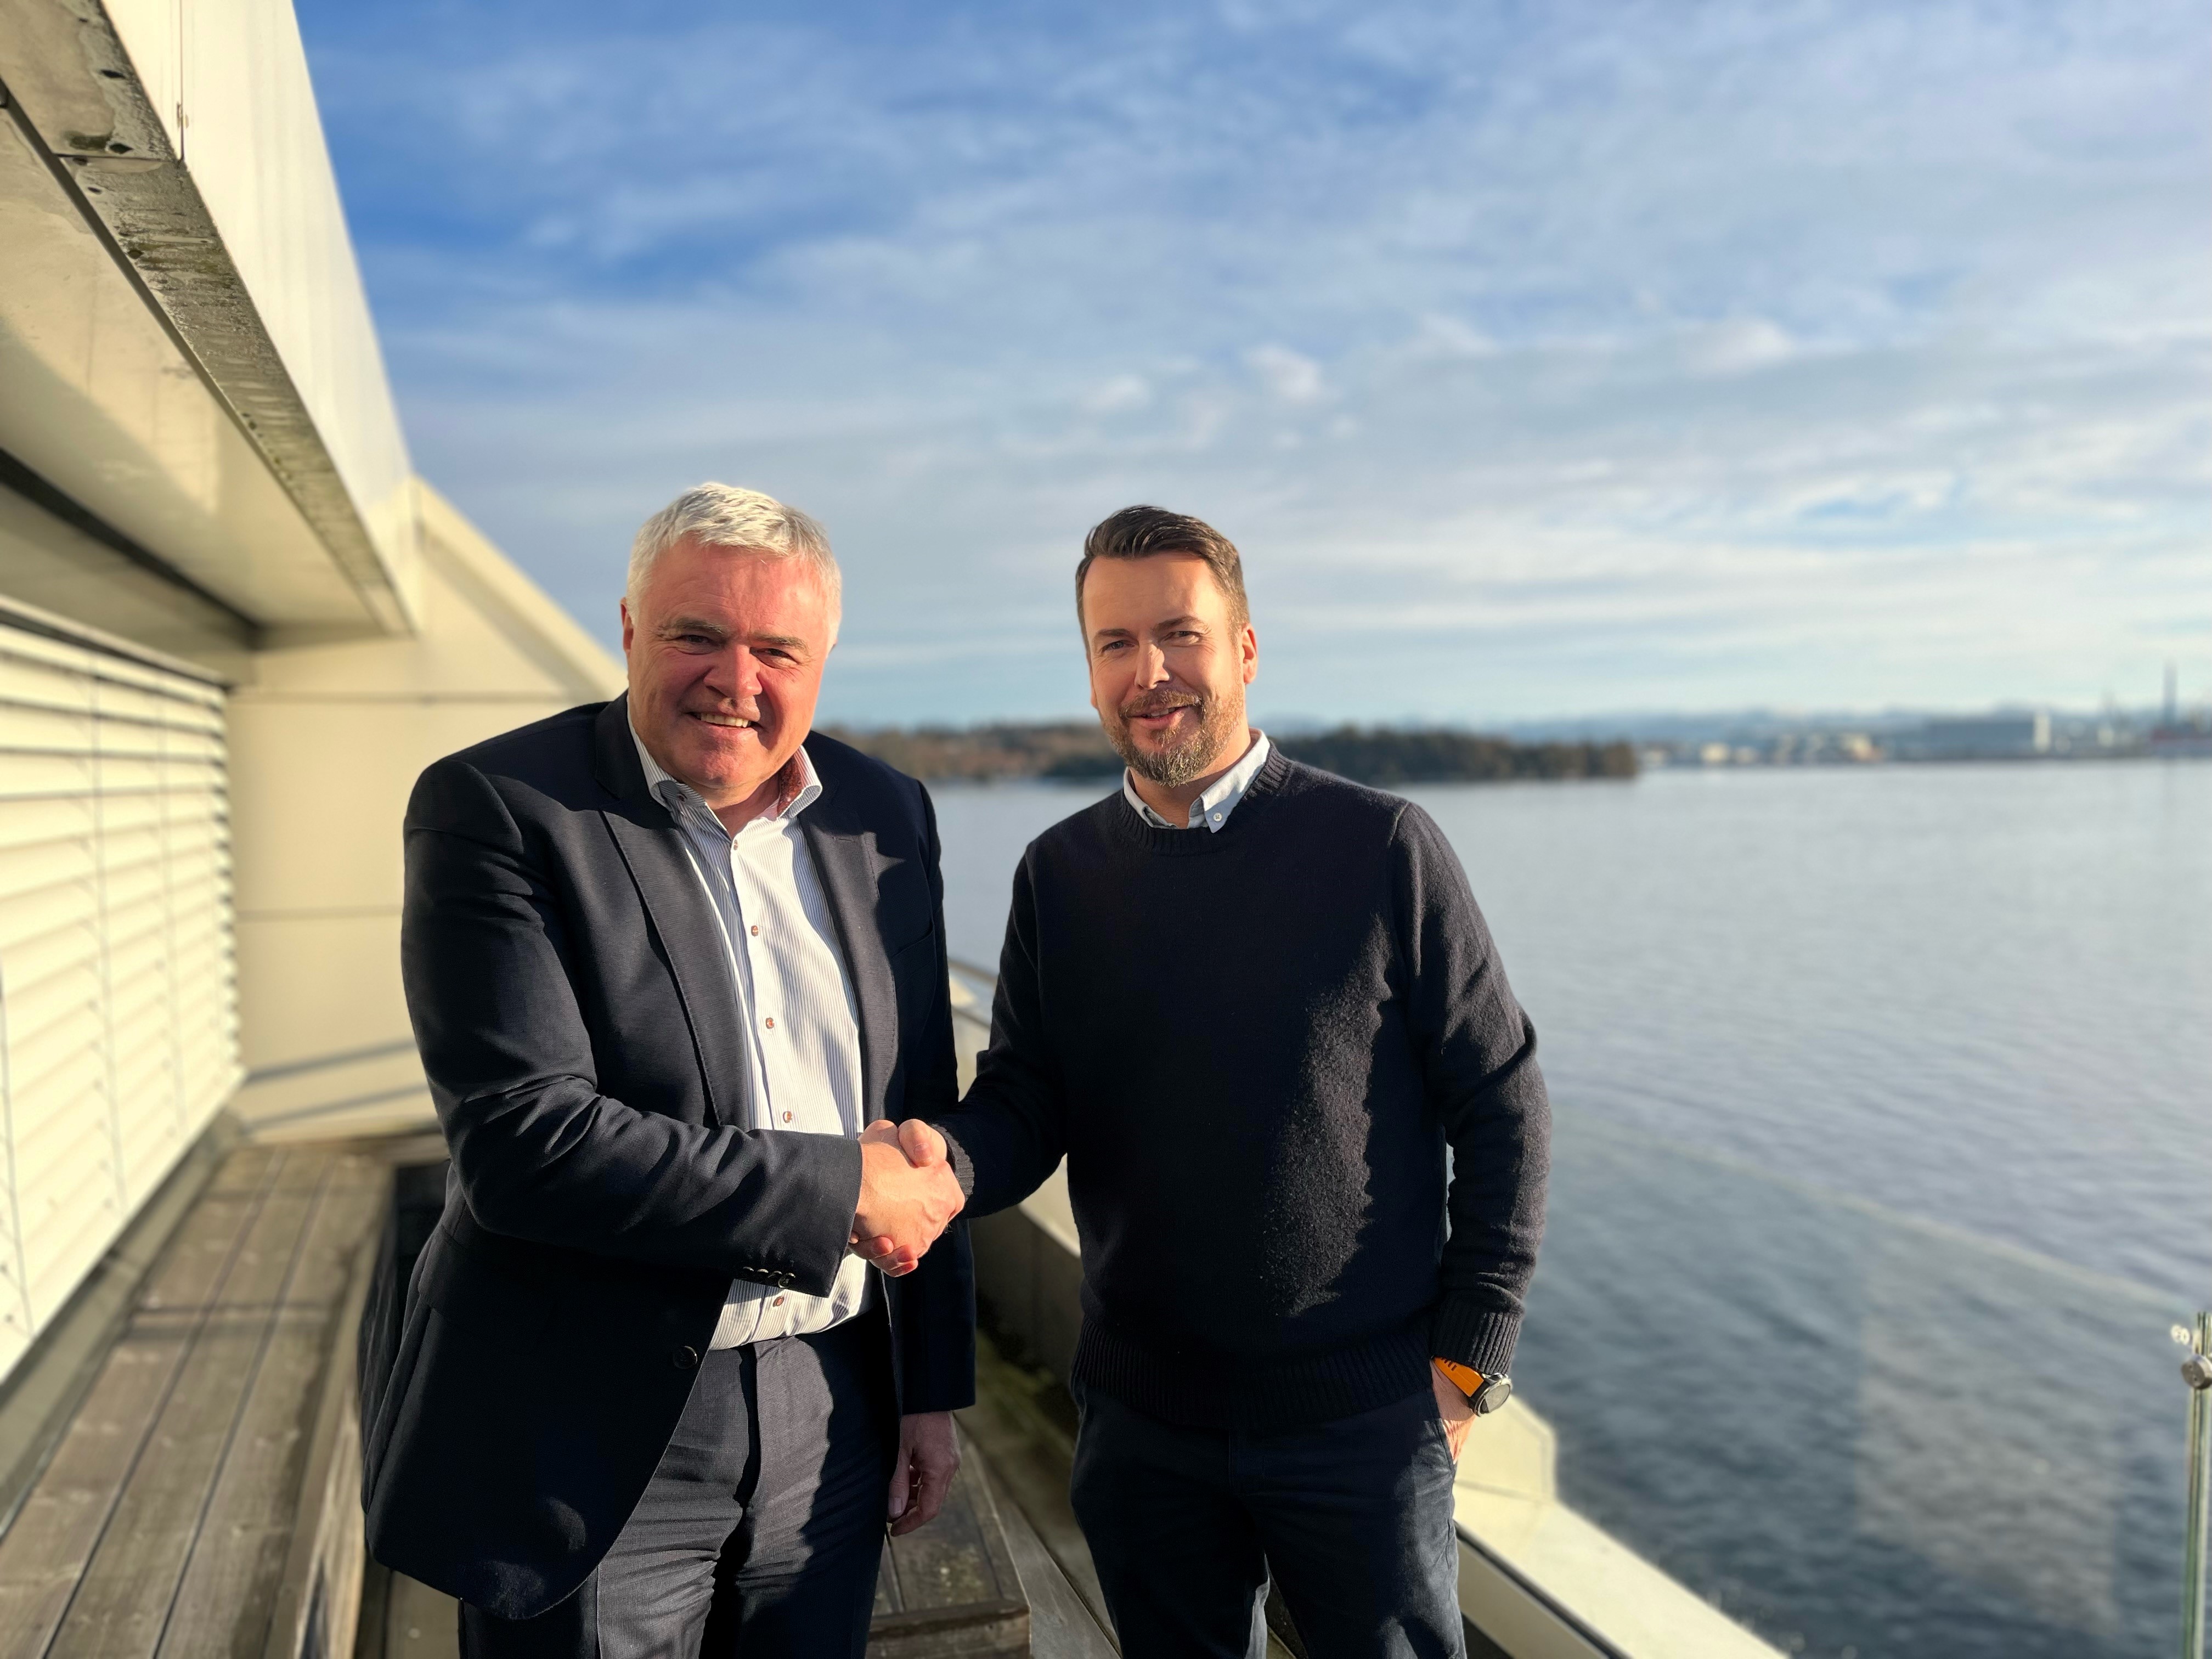 DeepOcean buys Norwegian firm to grow subsea offering